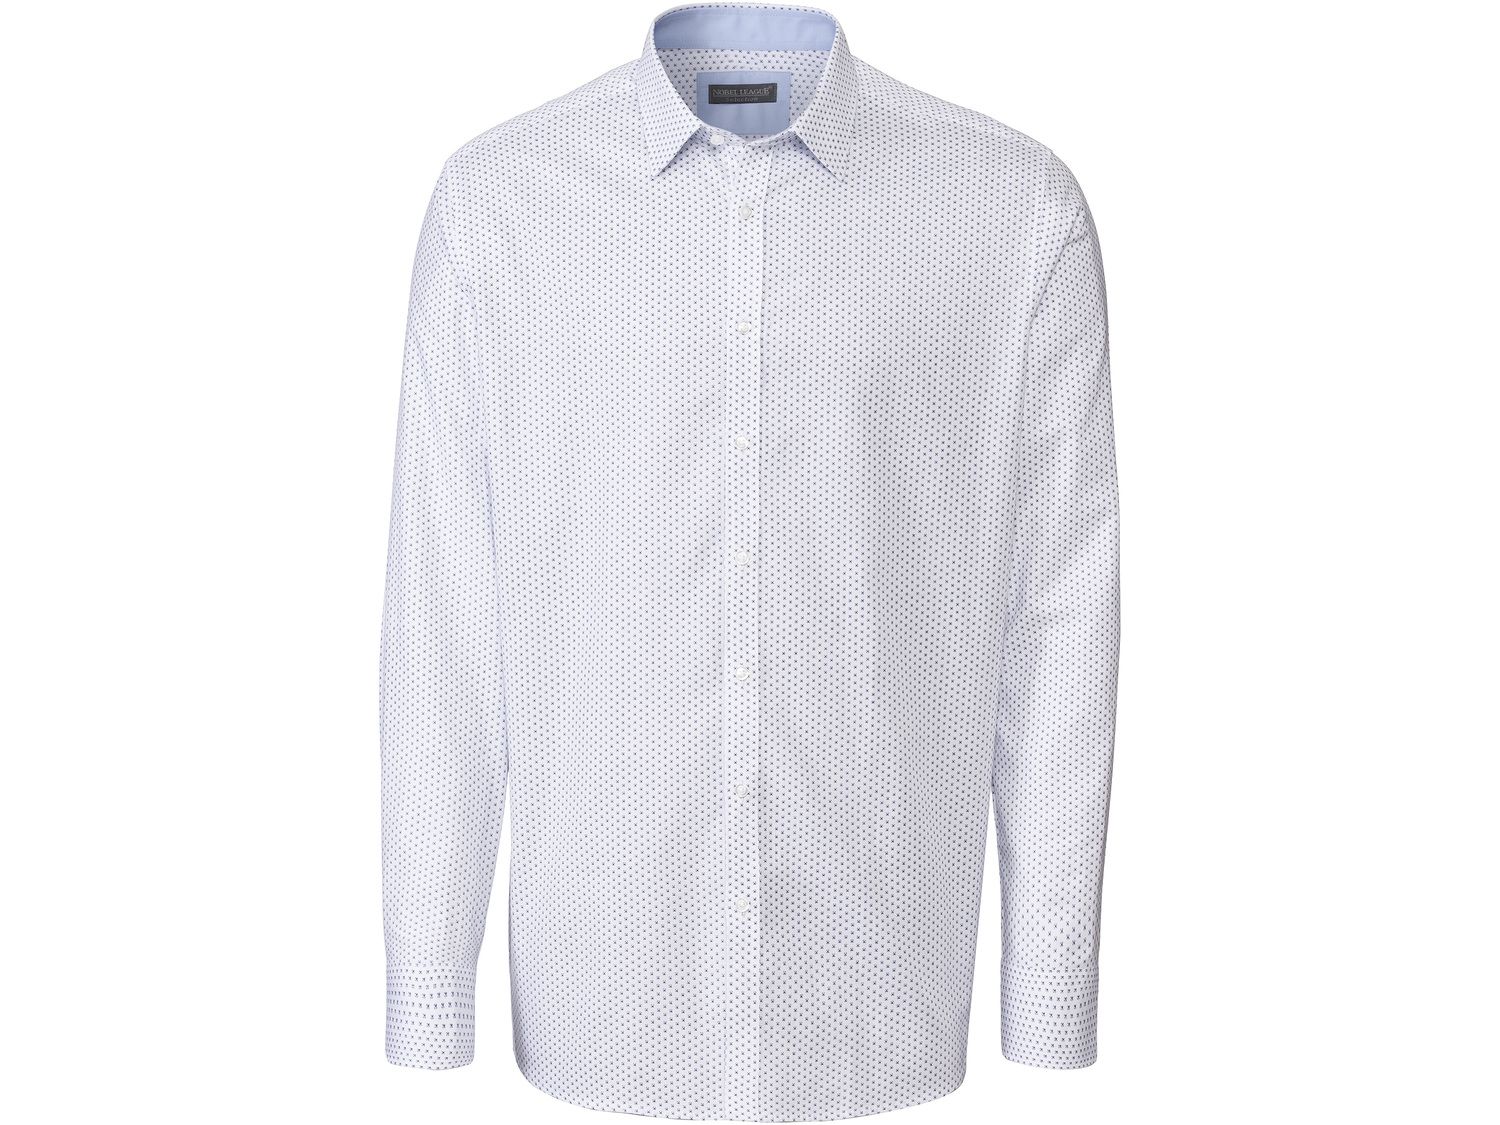 Koszula biznesowa męska , cena 49,99 PLN 
- rozmiary: 40-42
- taliowany krój
- ...